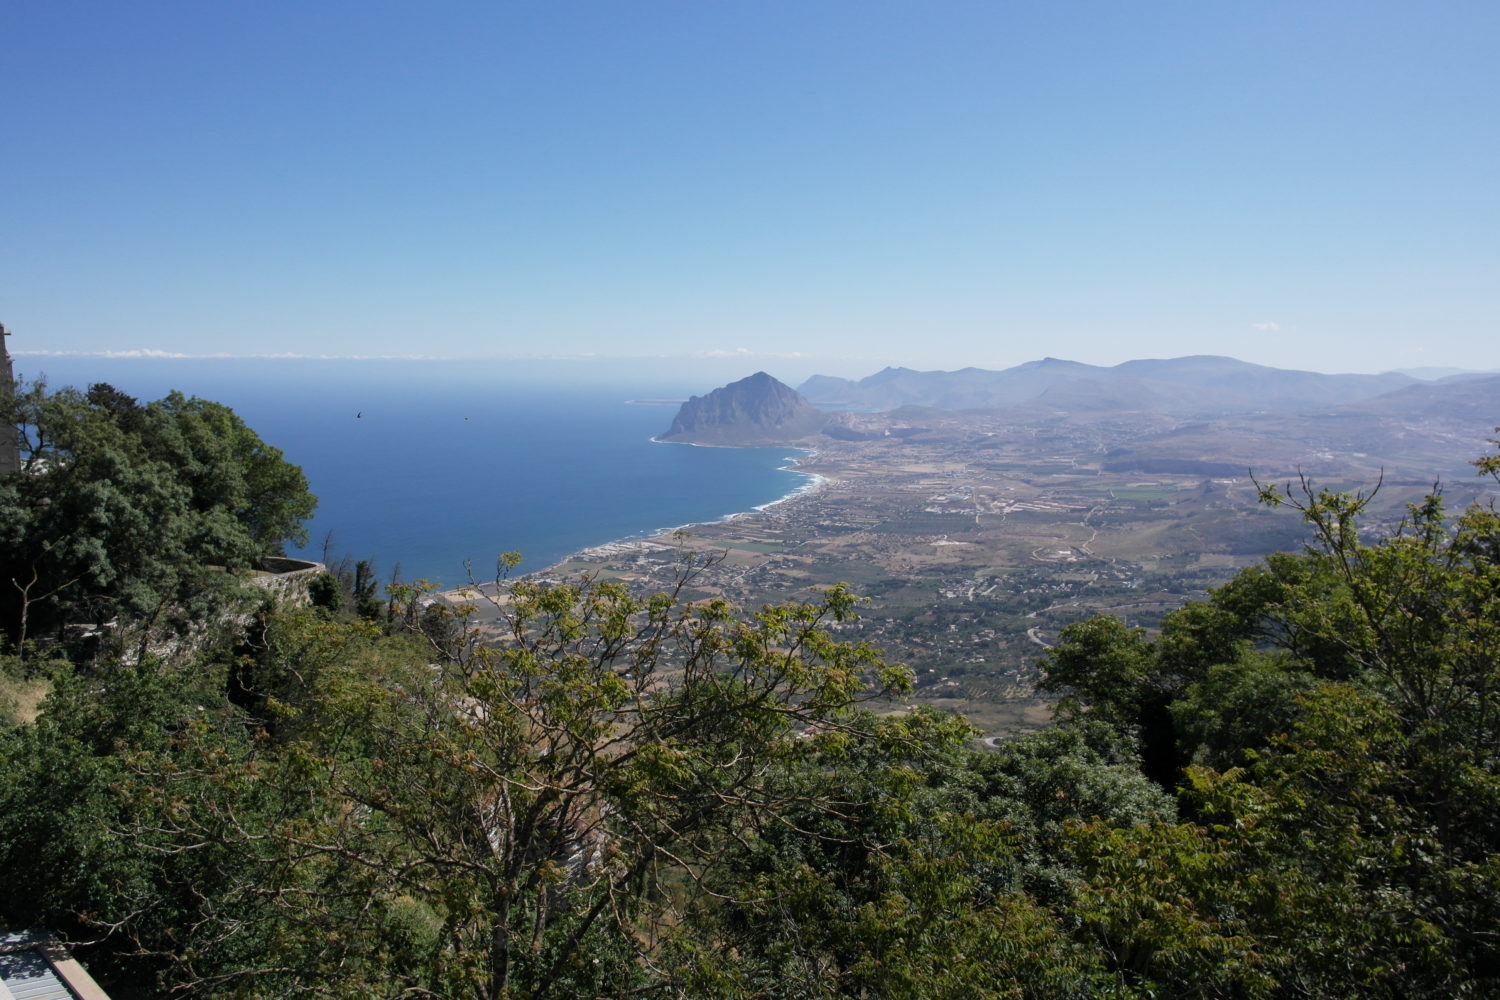 Awe-inspiring views in Sicily.